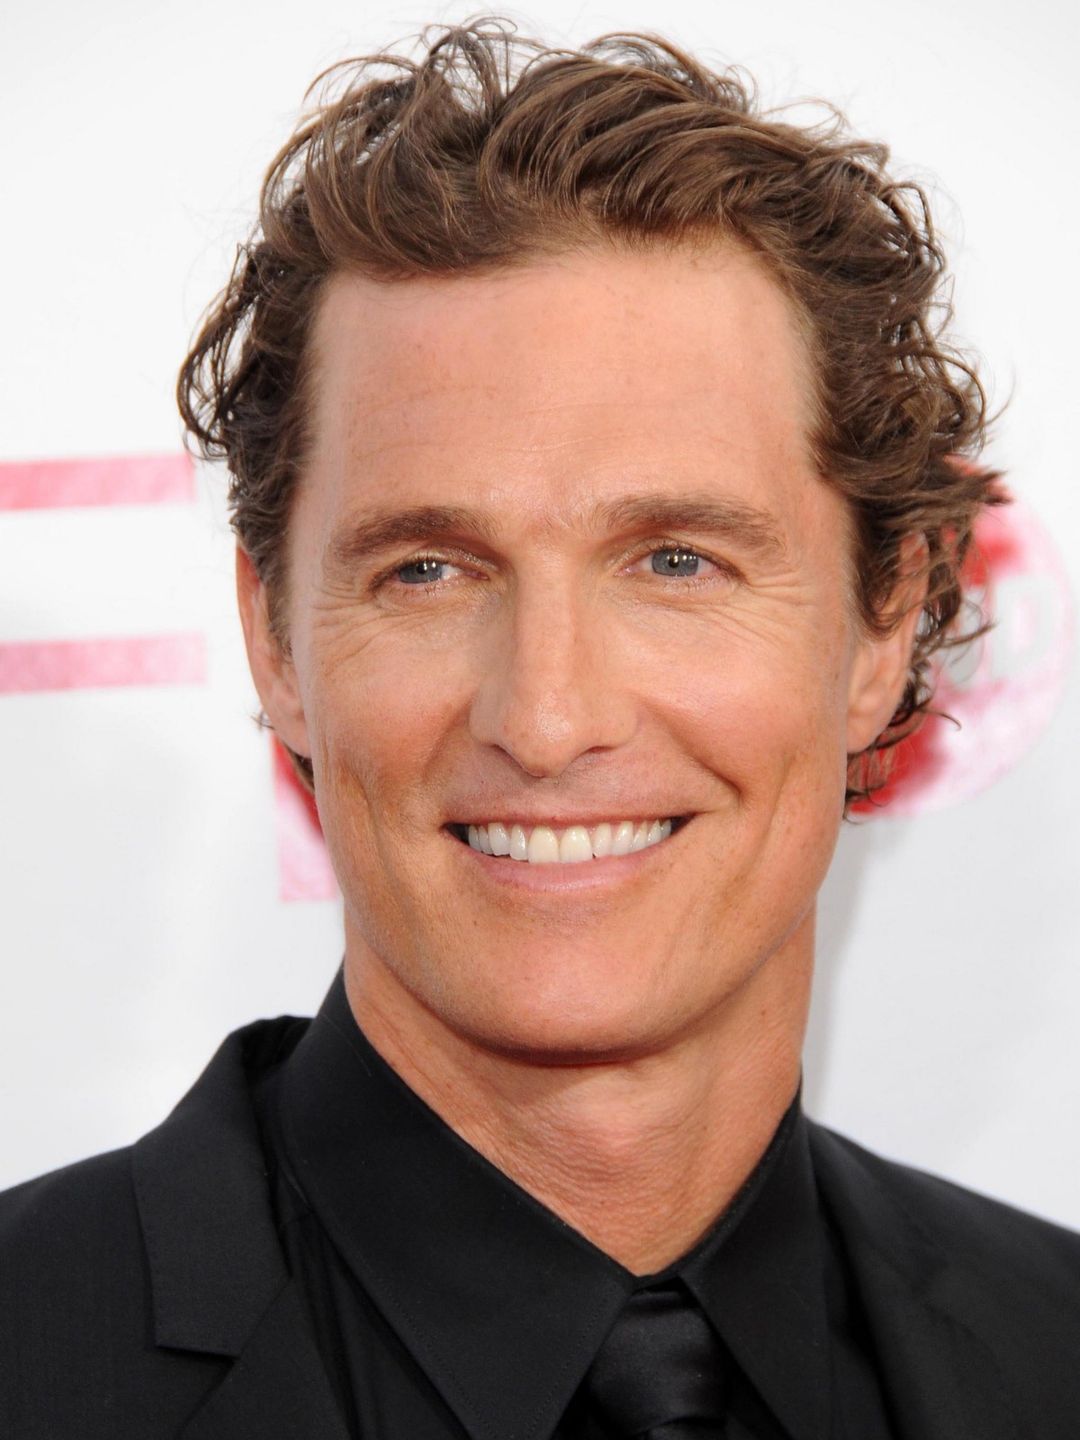 Matthew McConaughey who is he